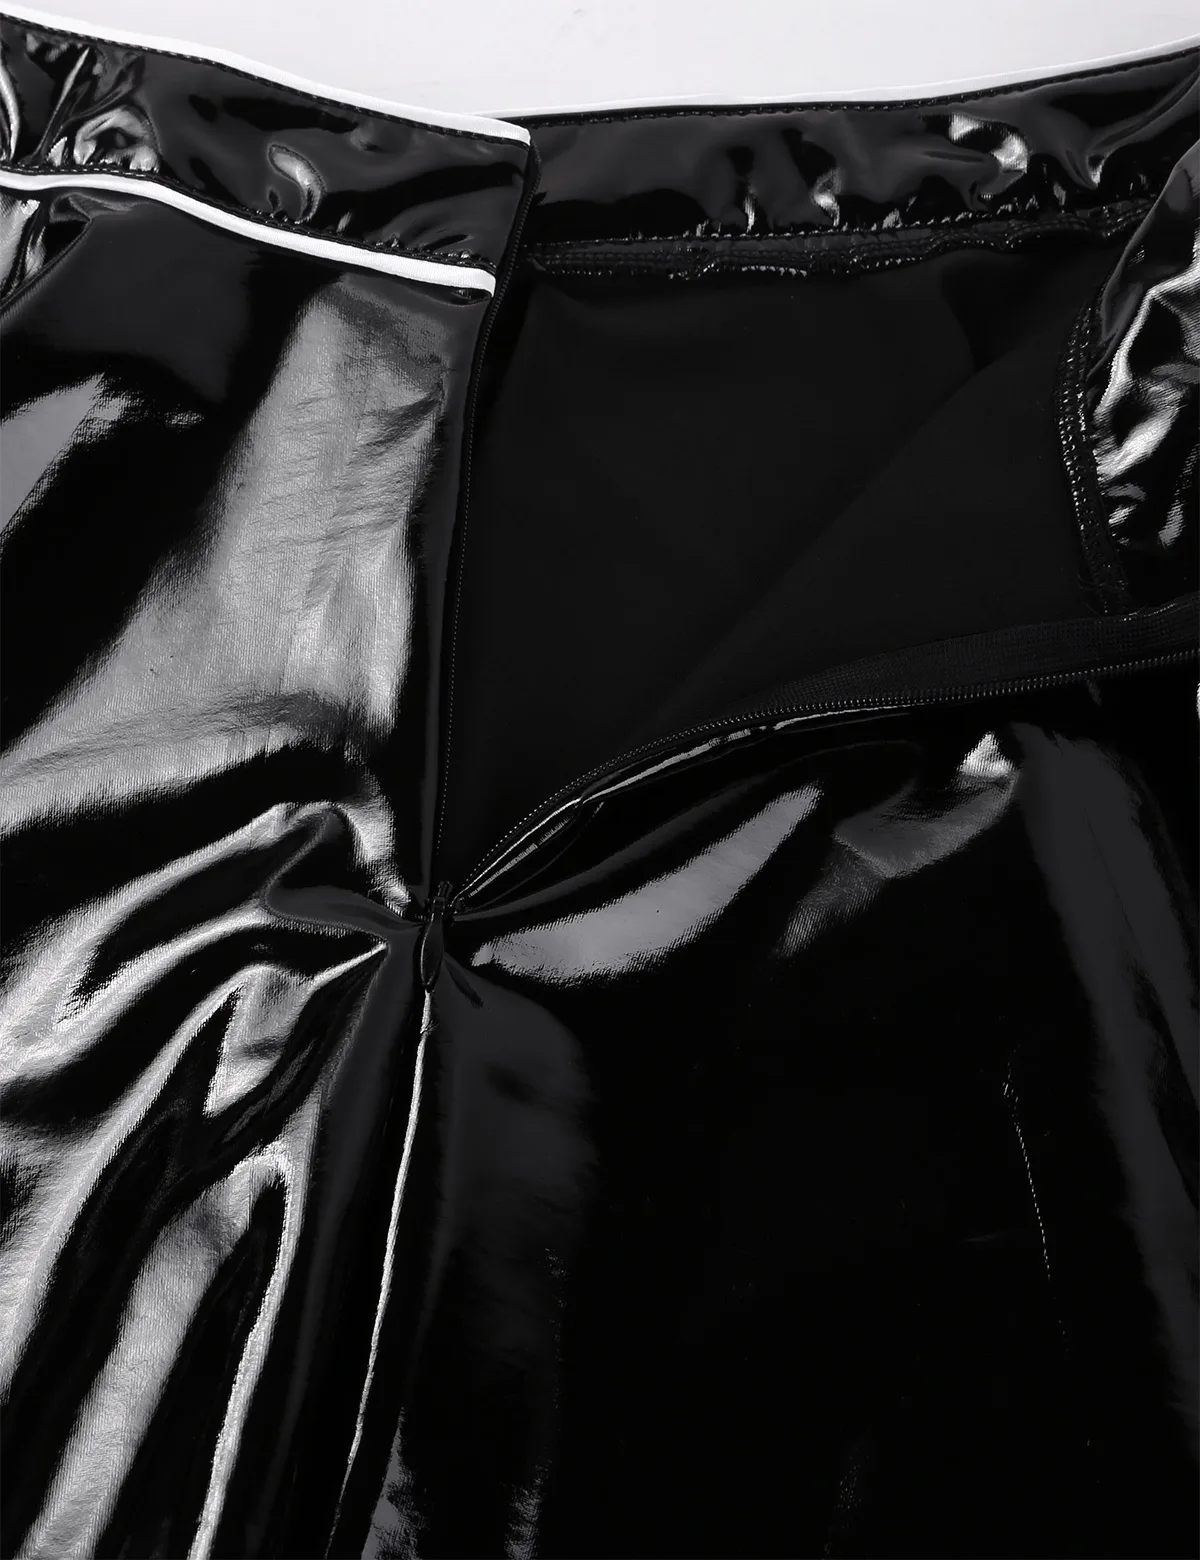 DPOIS для женщин Латекс Французская горничная Хэллоуин косплей костюм дамы Wetlook кожаное белье платье костюм укороченный топ и короткая юбка чокер